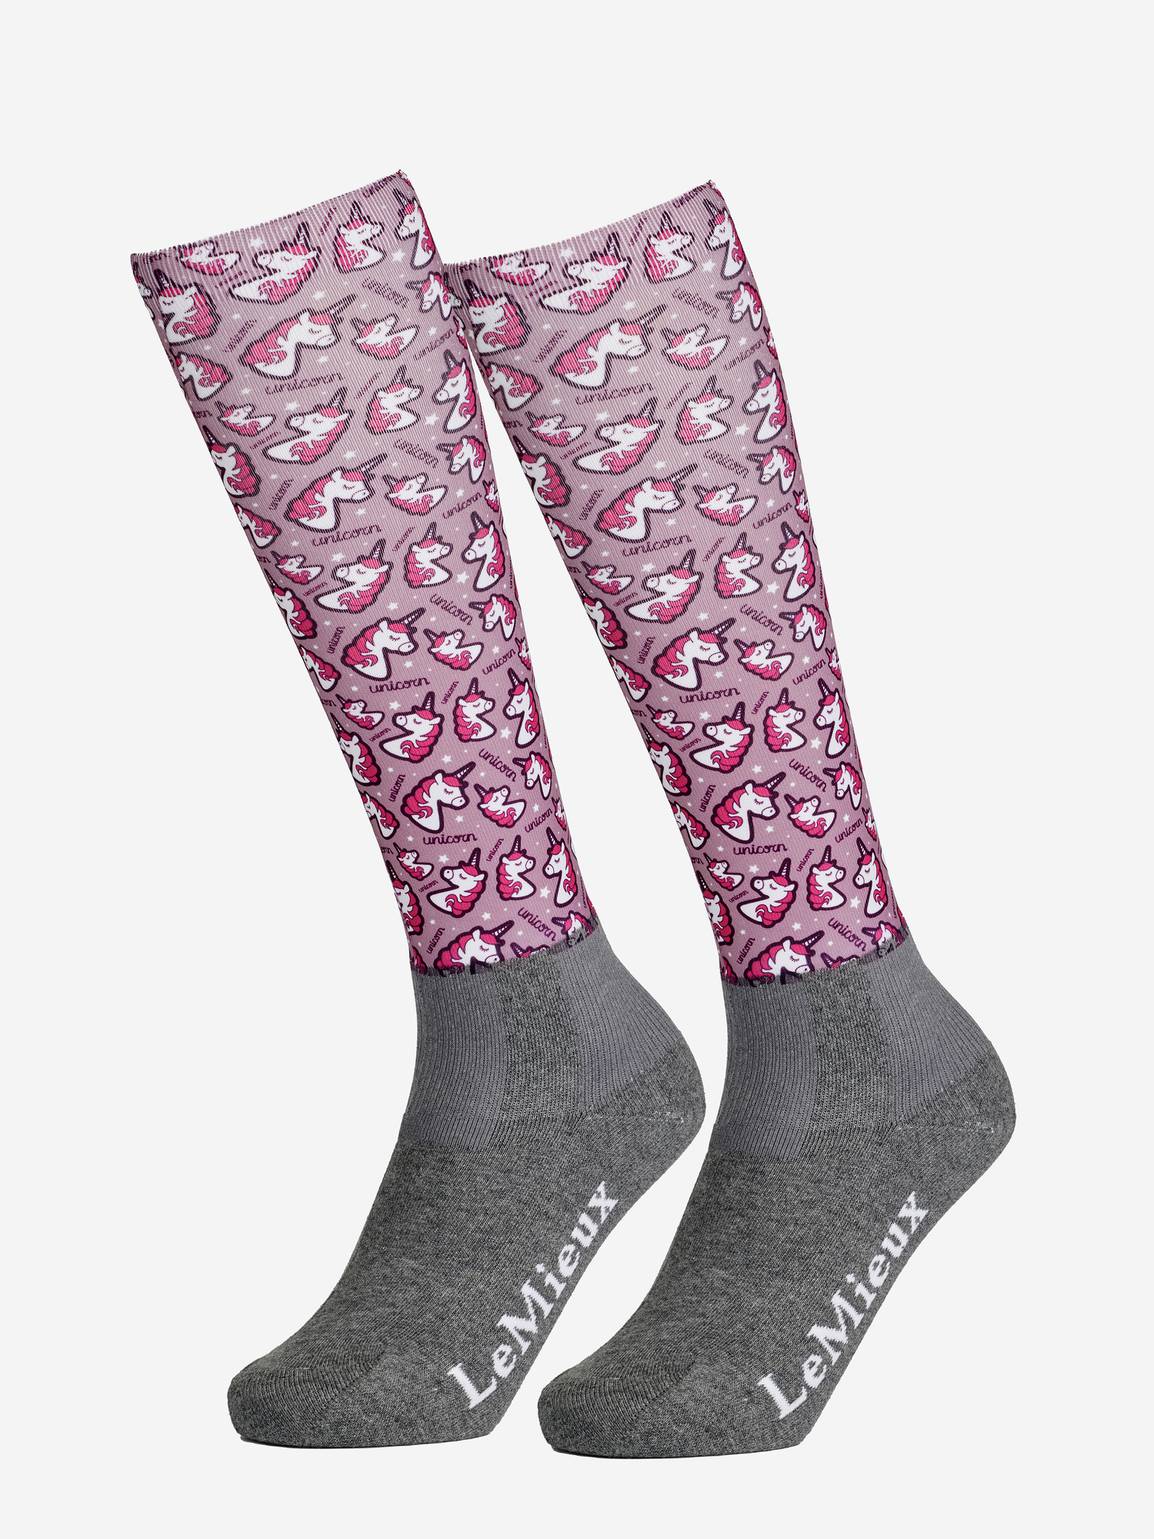 LeMieux Footsie Socks Unicorn Adult